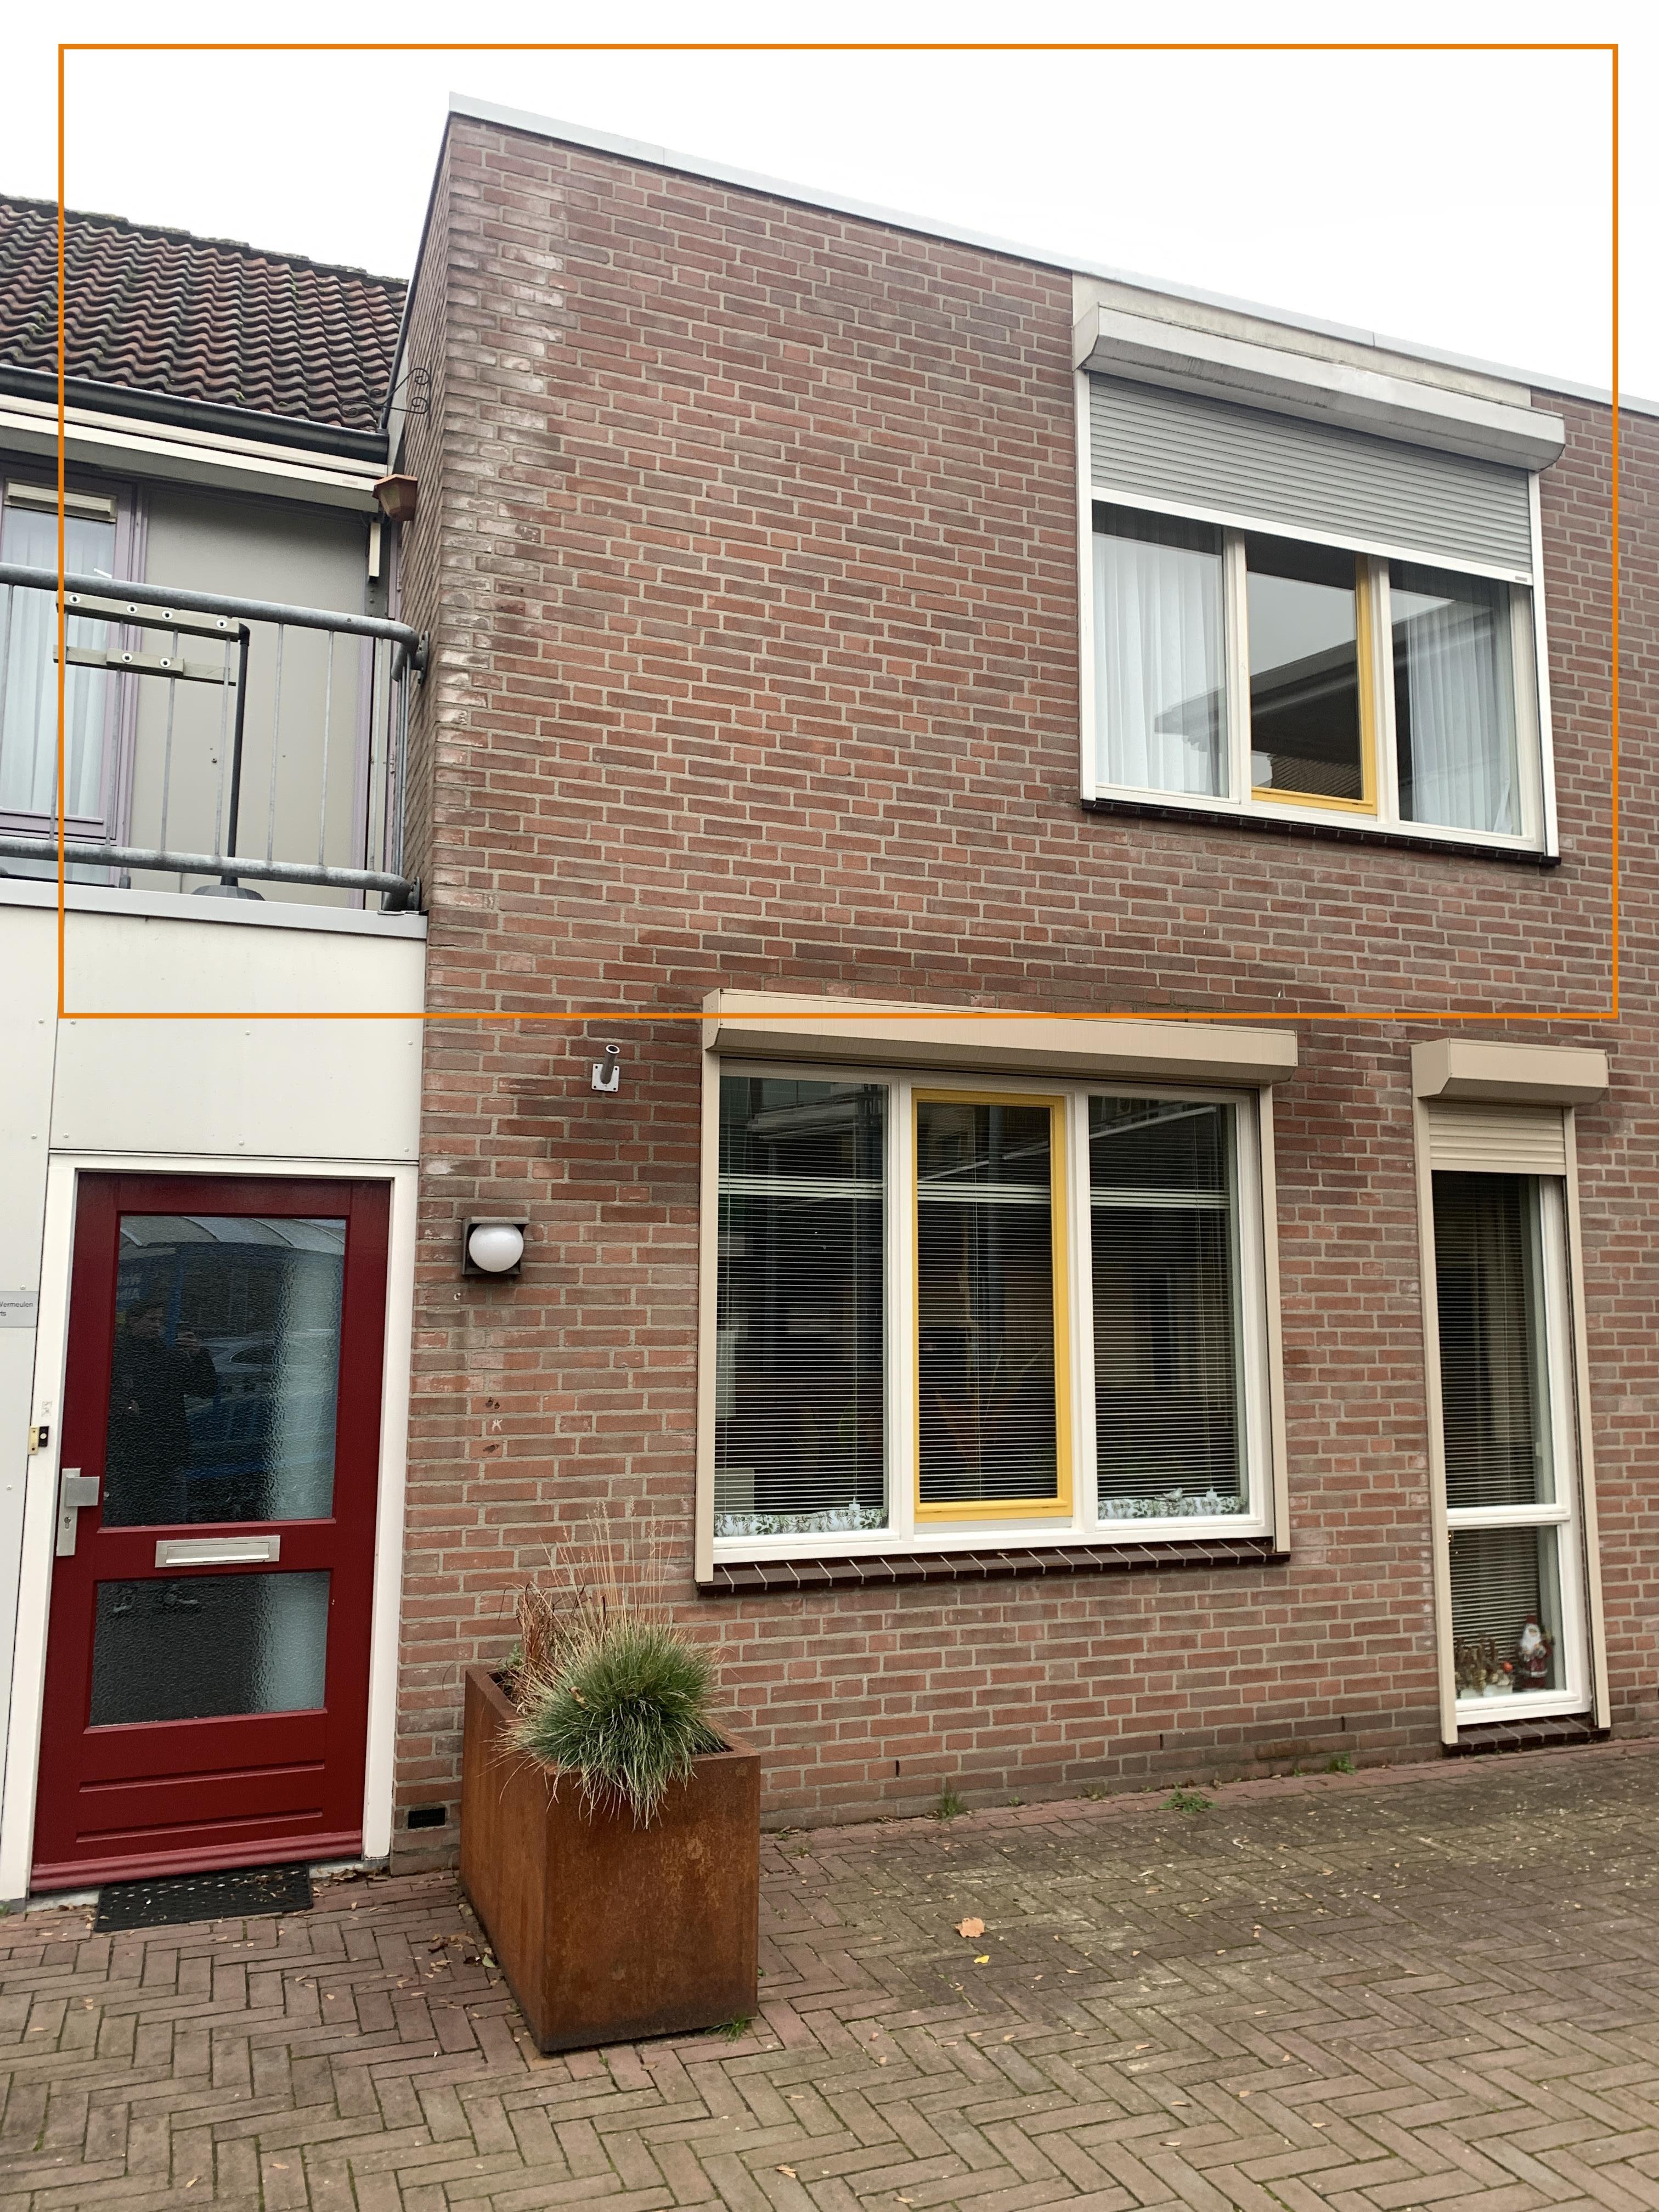 Julianastraat 9, 6691 AX Gendt, Nederland